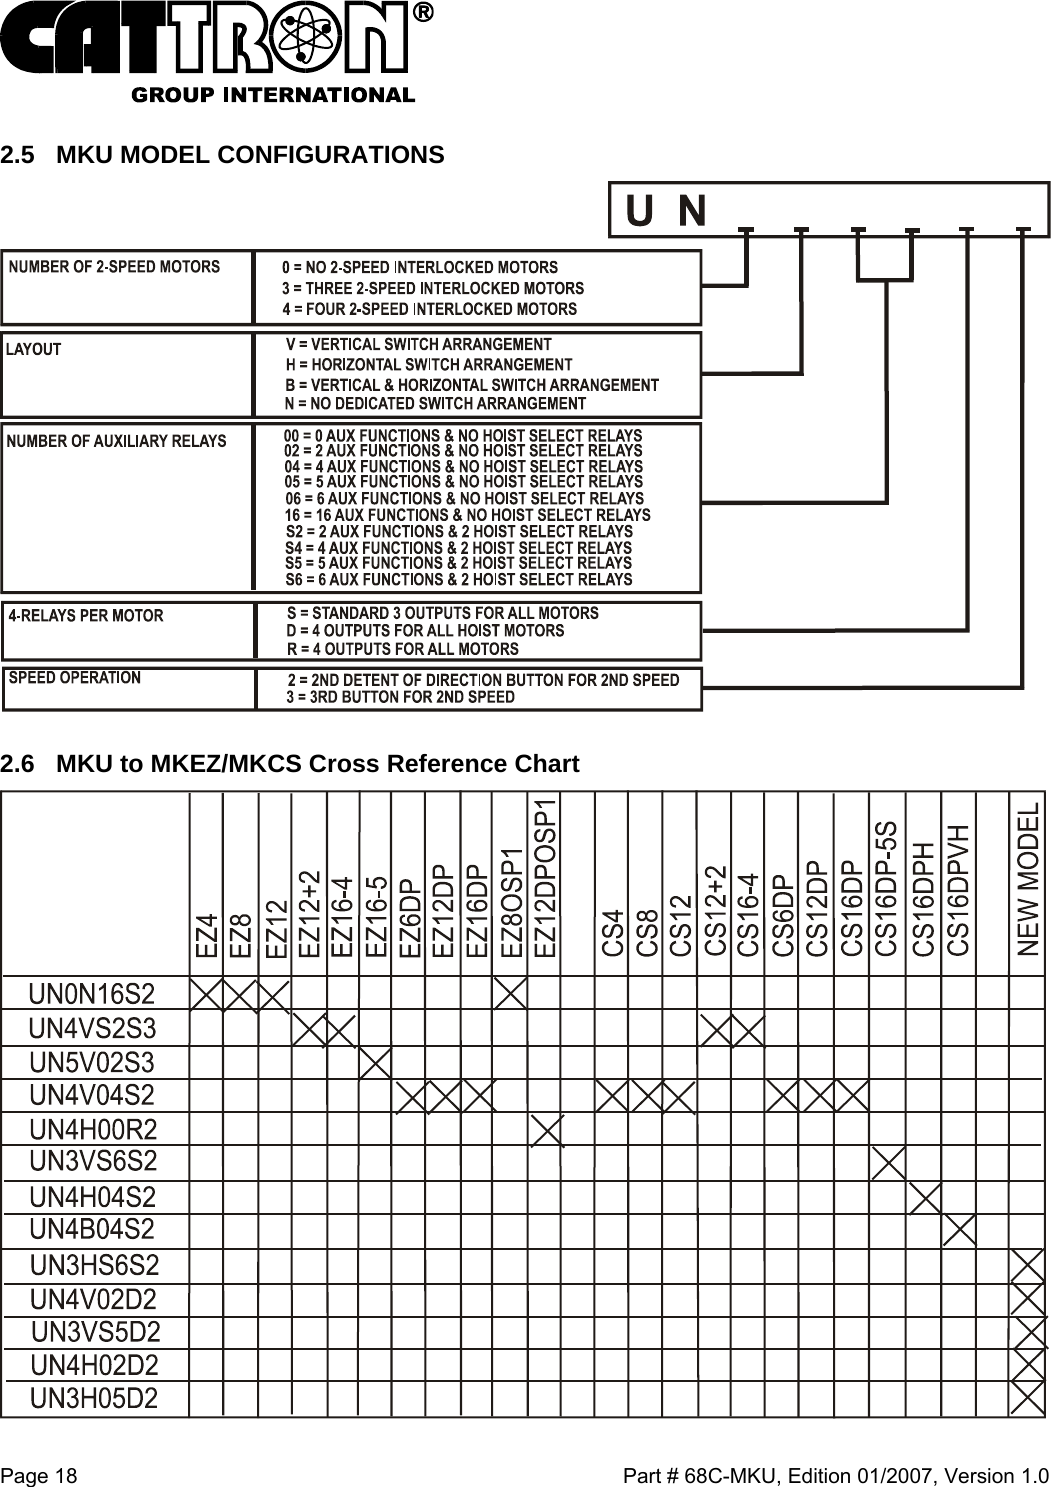  Page 18    Part # 68C-MKU, Edition 01/2007, Version 1.0 2.5  MKU MODEL CONFIGURATIONS  2.6  MKU to MKEZ/MKCS Cross Reference Chart  